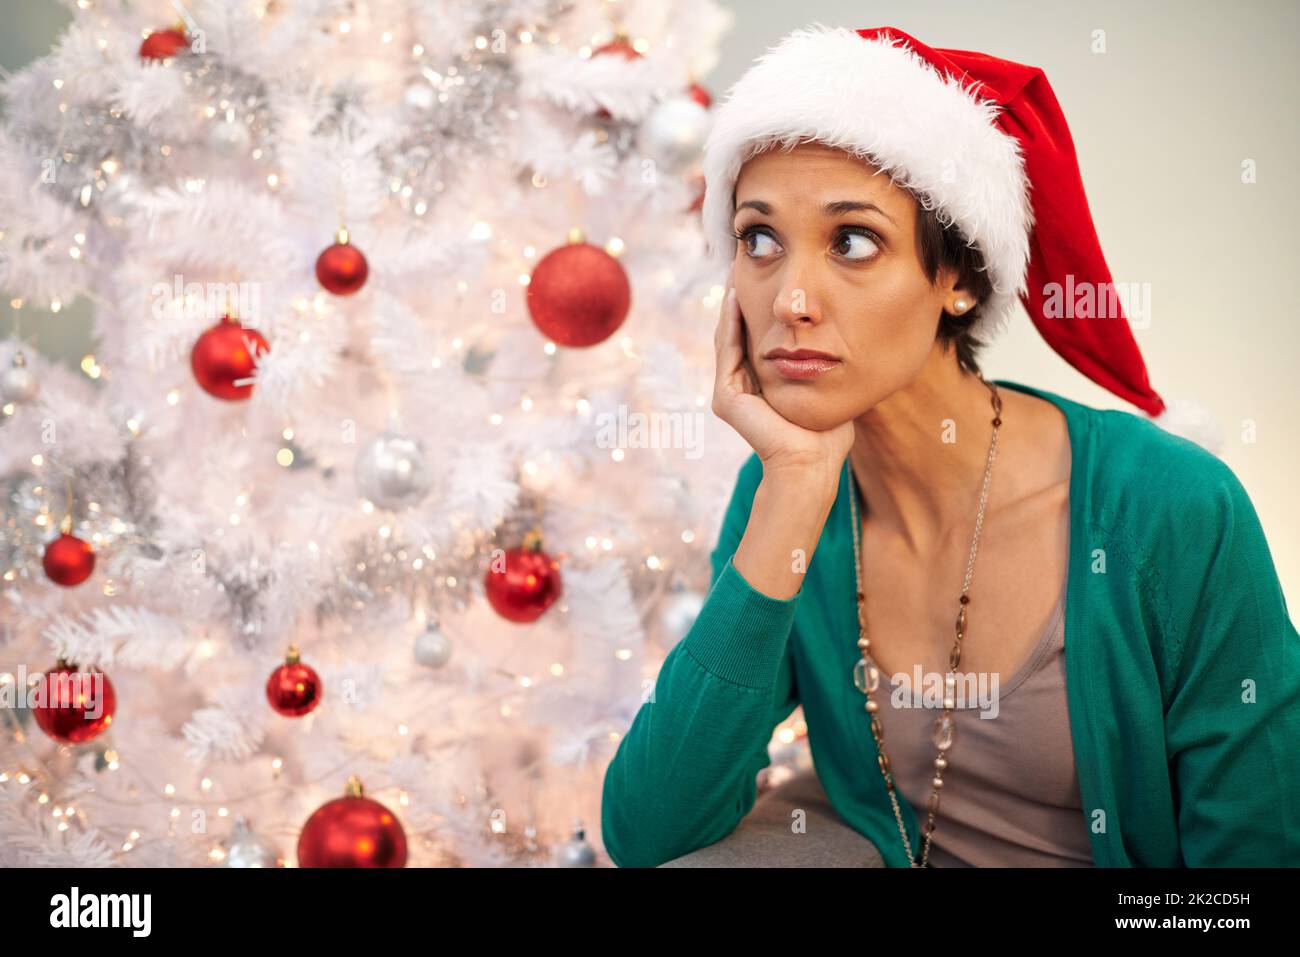 Whens santa va arriver. Prise de vue d'une jeune femme à l'air mécontenté de Christmastime. Banque D'Images